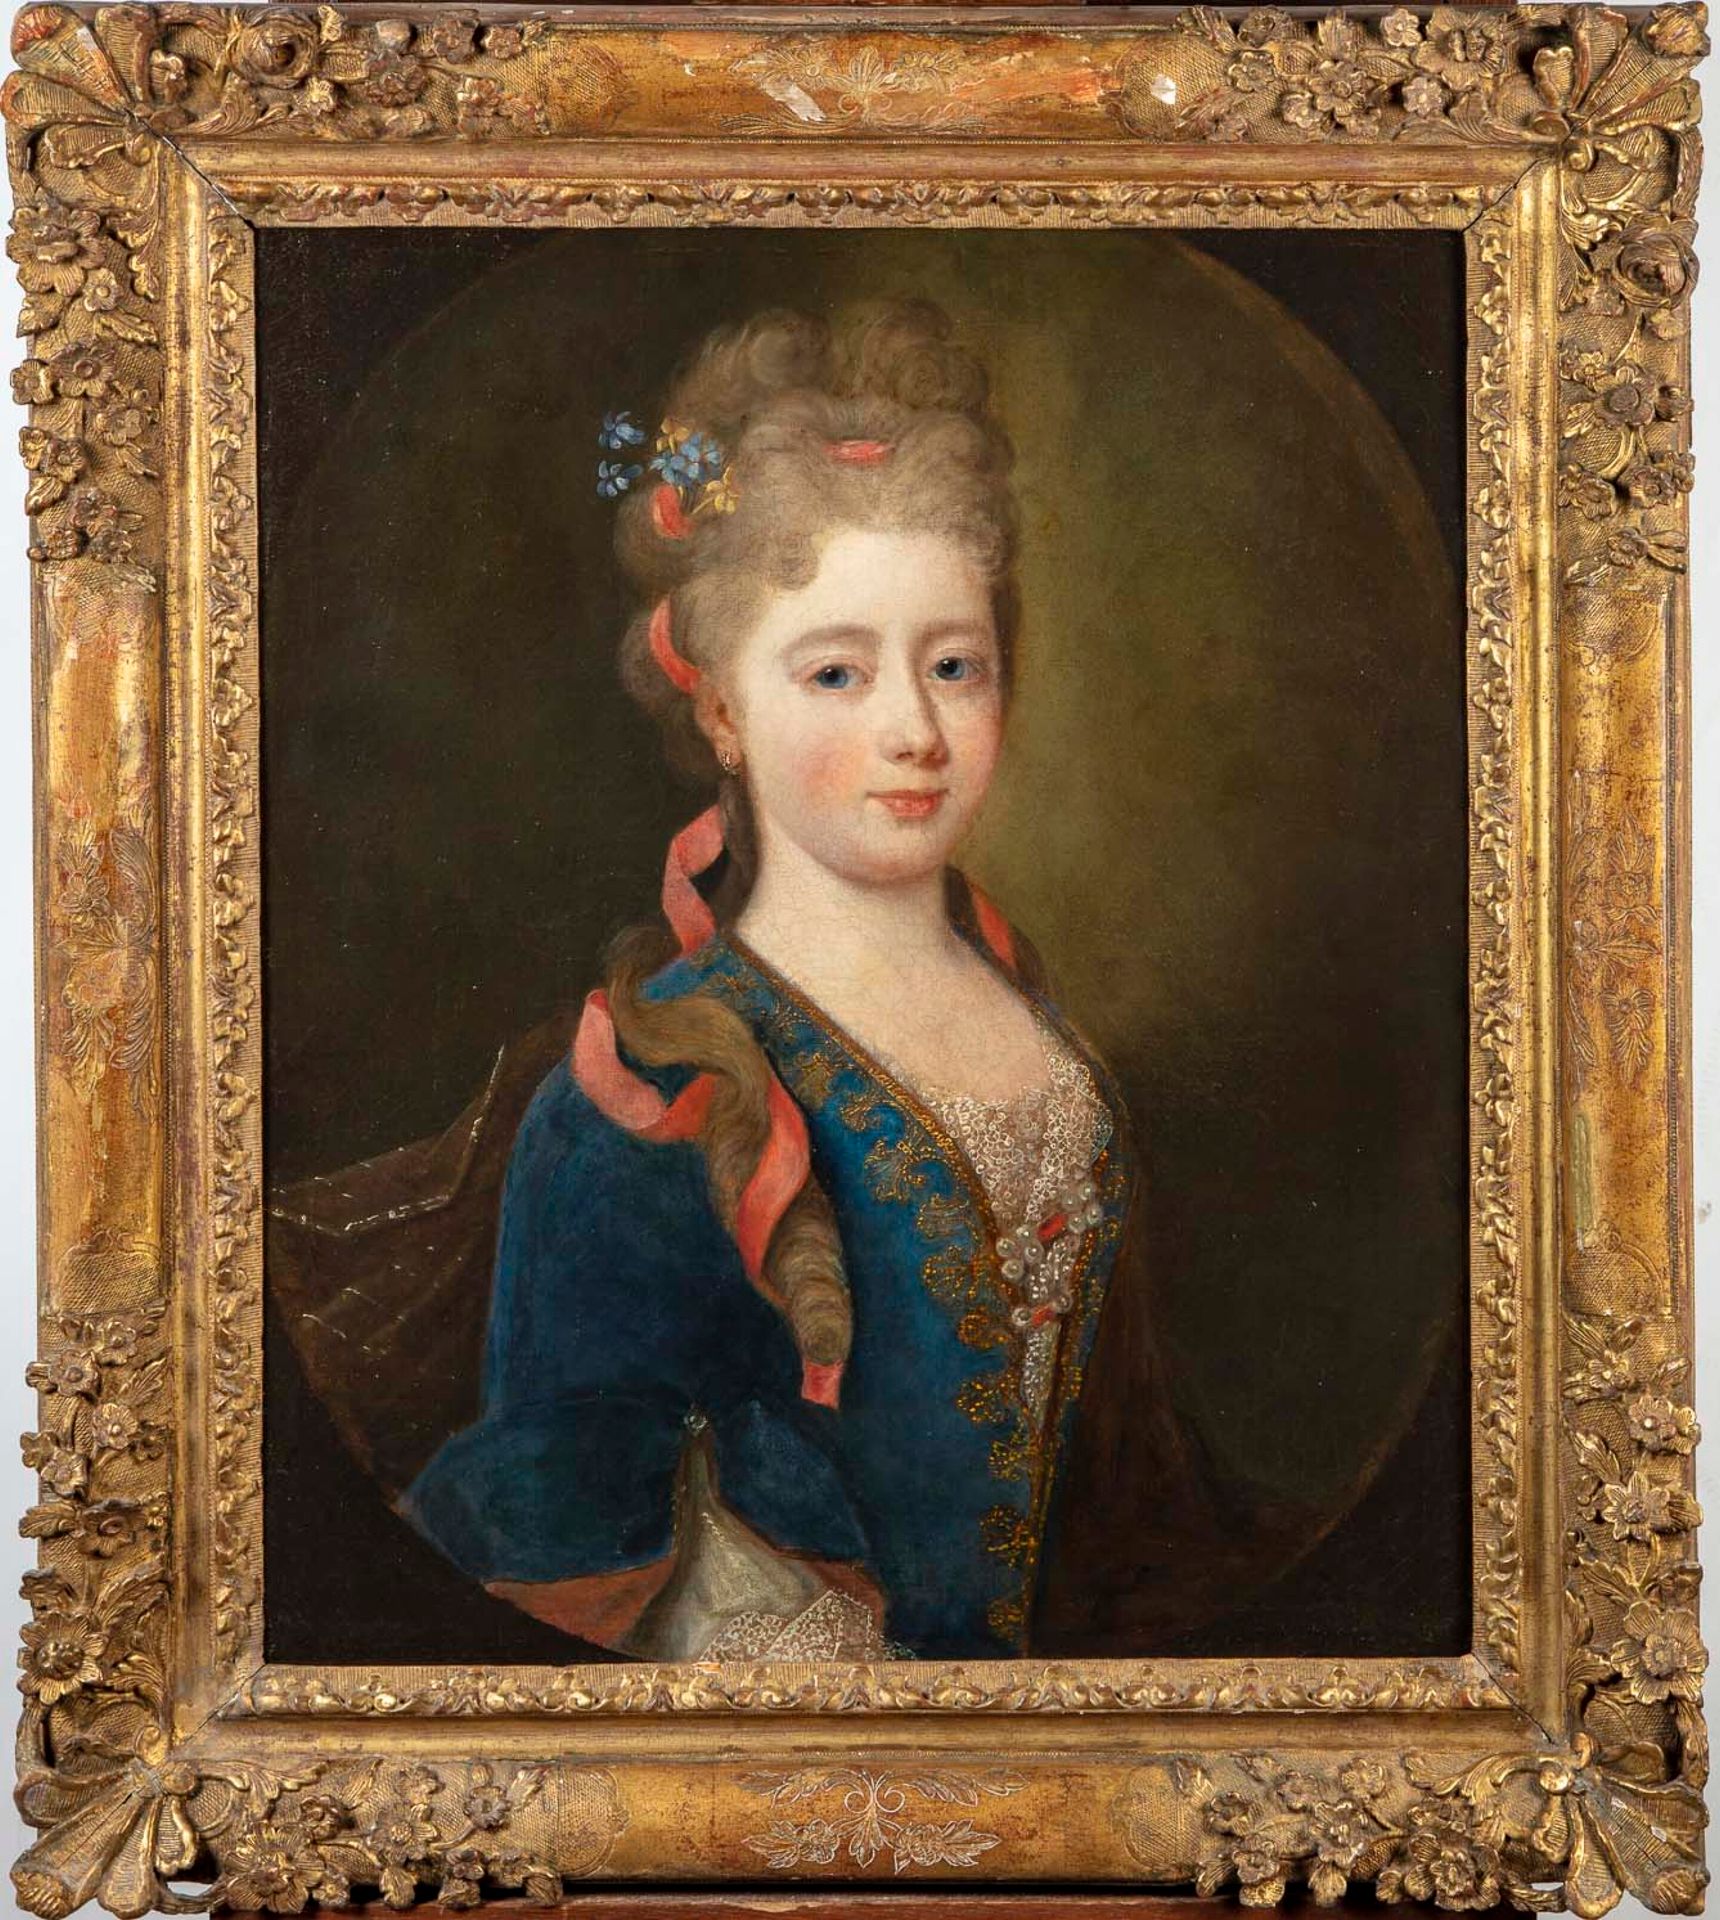 ECOLE FRANCAISE XVIIIè 18. Jahrhundert FRANZÖSISCHE SCHULE

Porträt von Mme des &hellip;